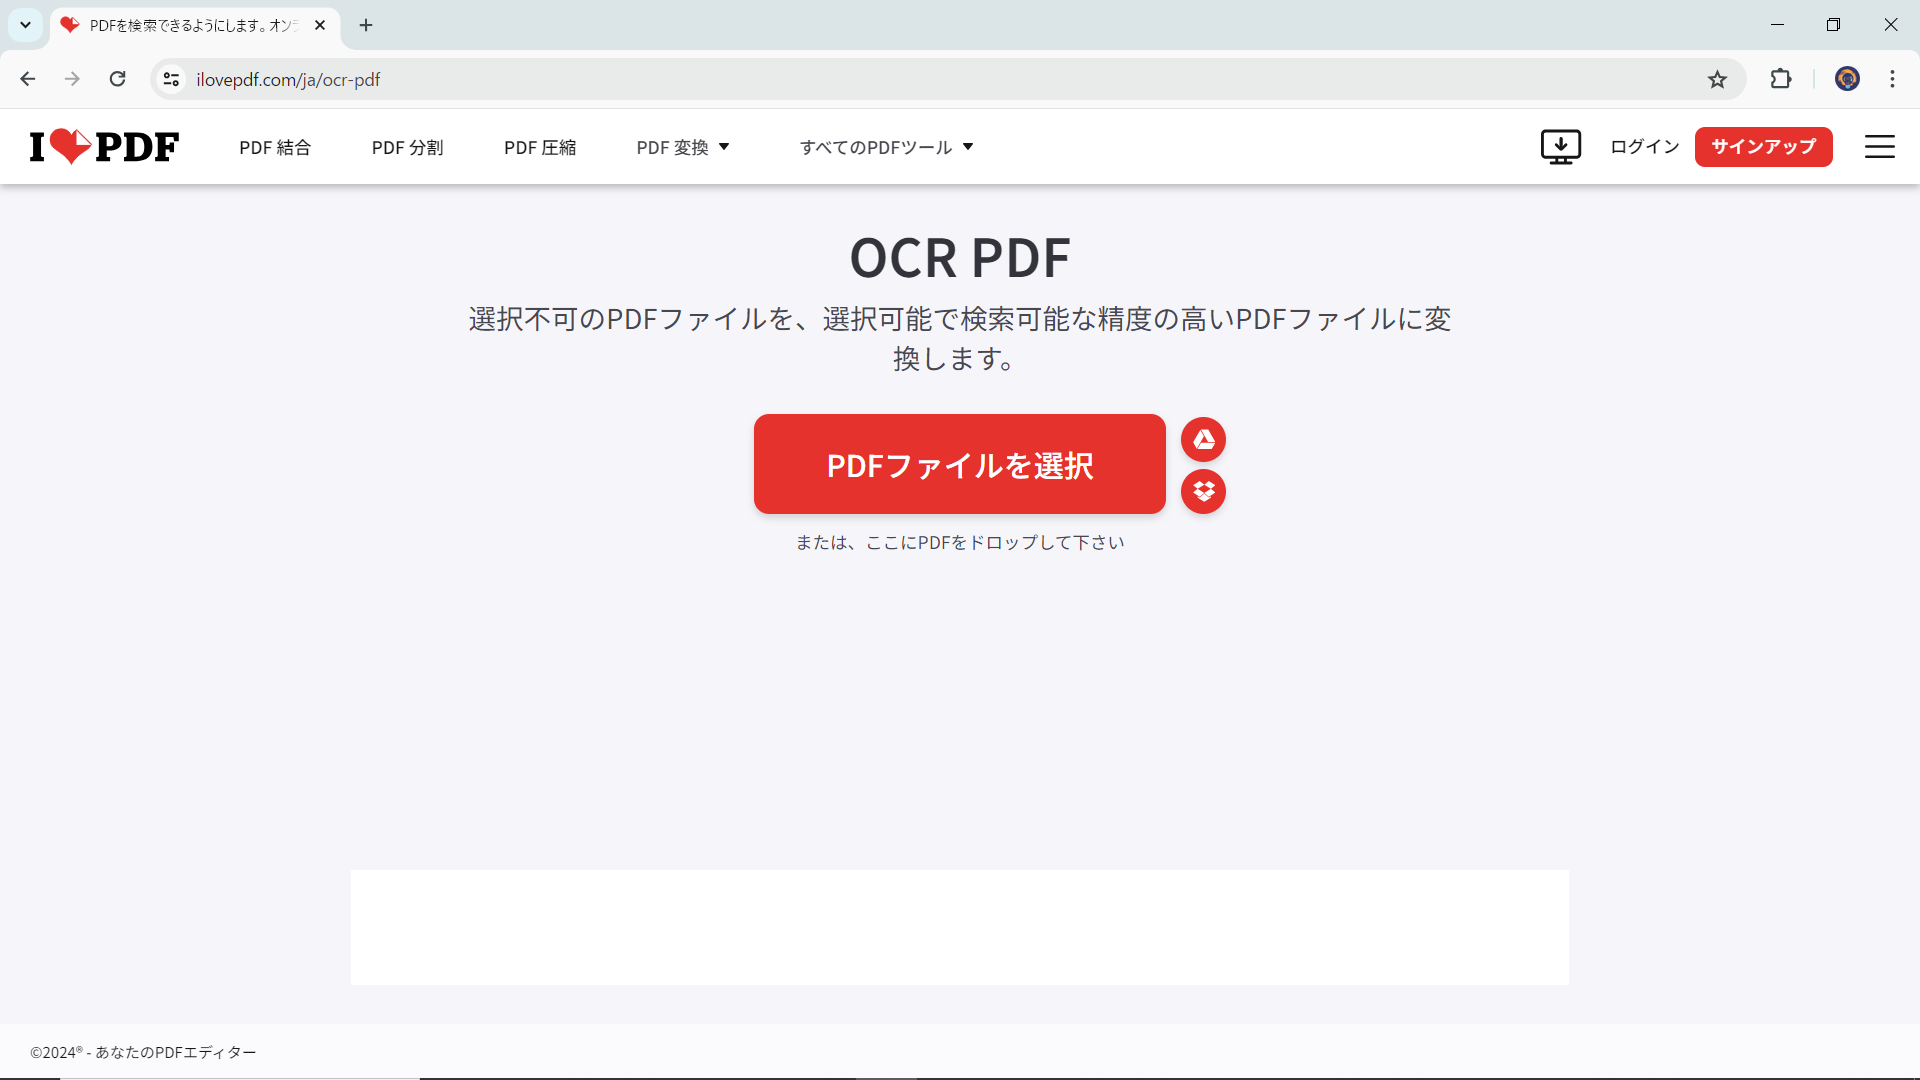 iLovePDFの「OCR PDF」